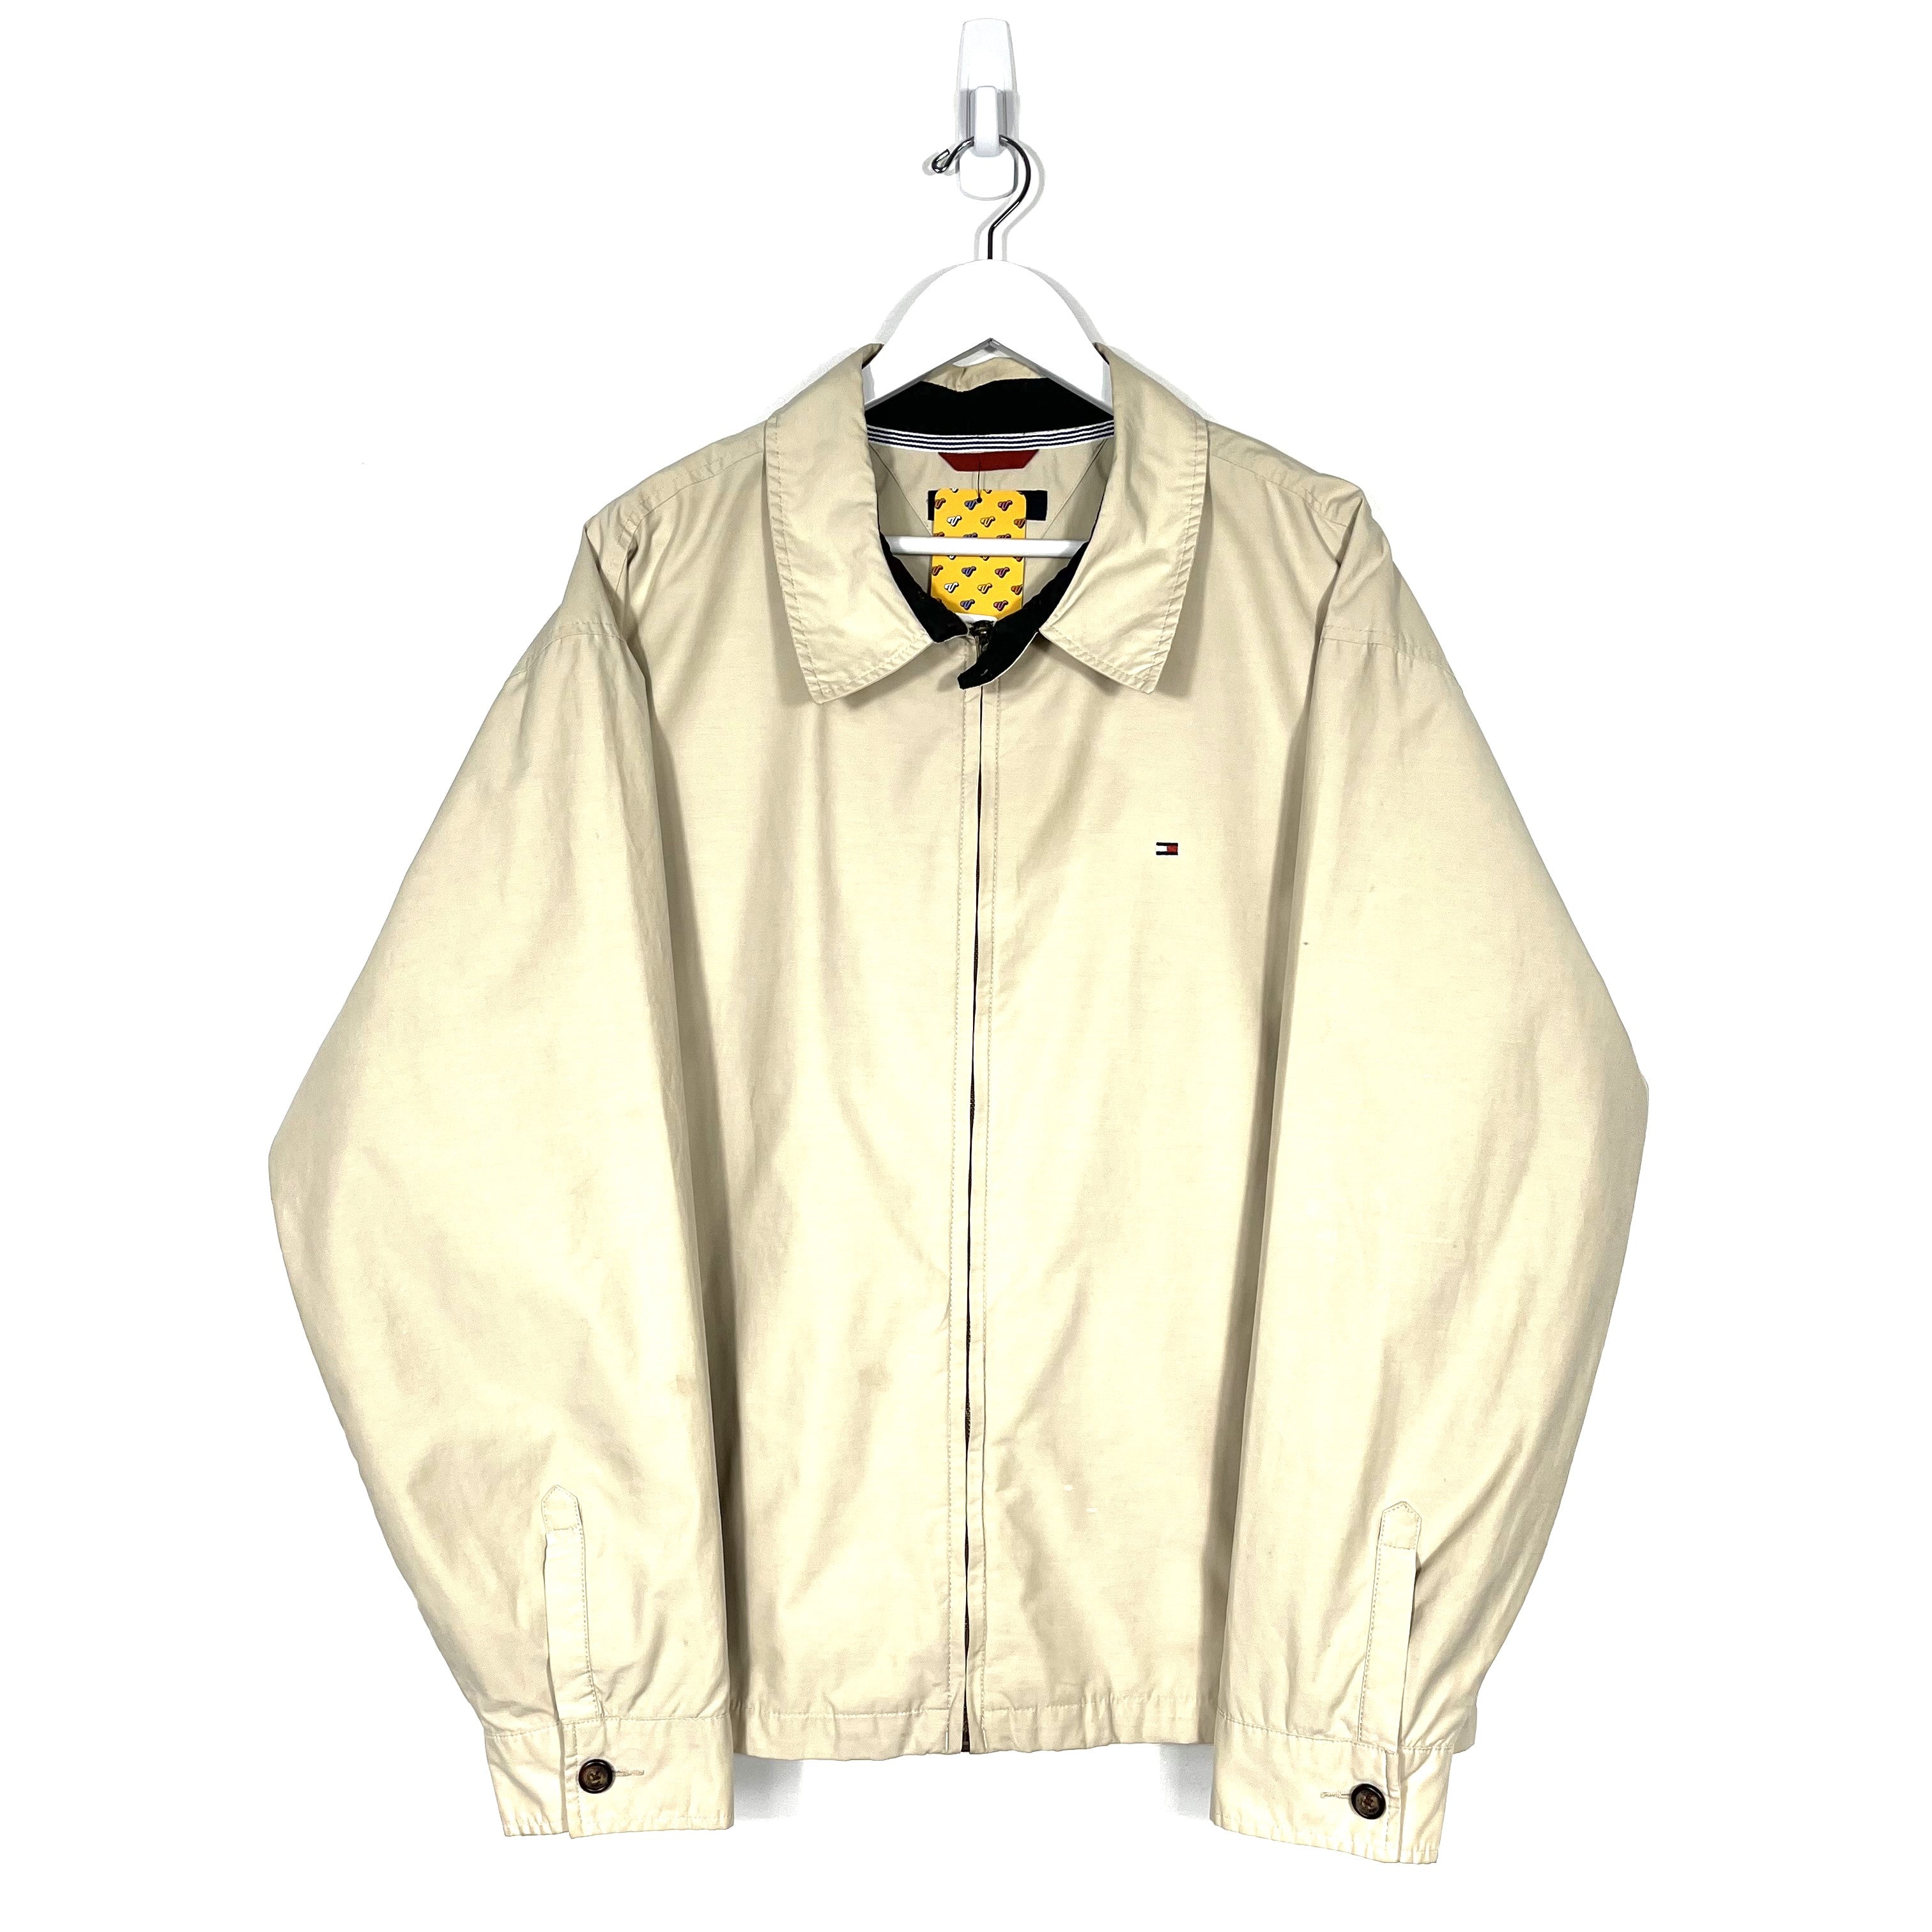 Tommy Hilfiger Harrington Jacket - Men's XL